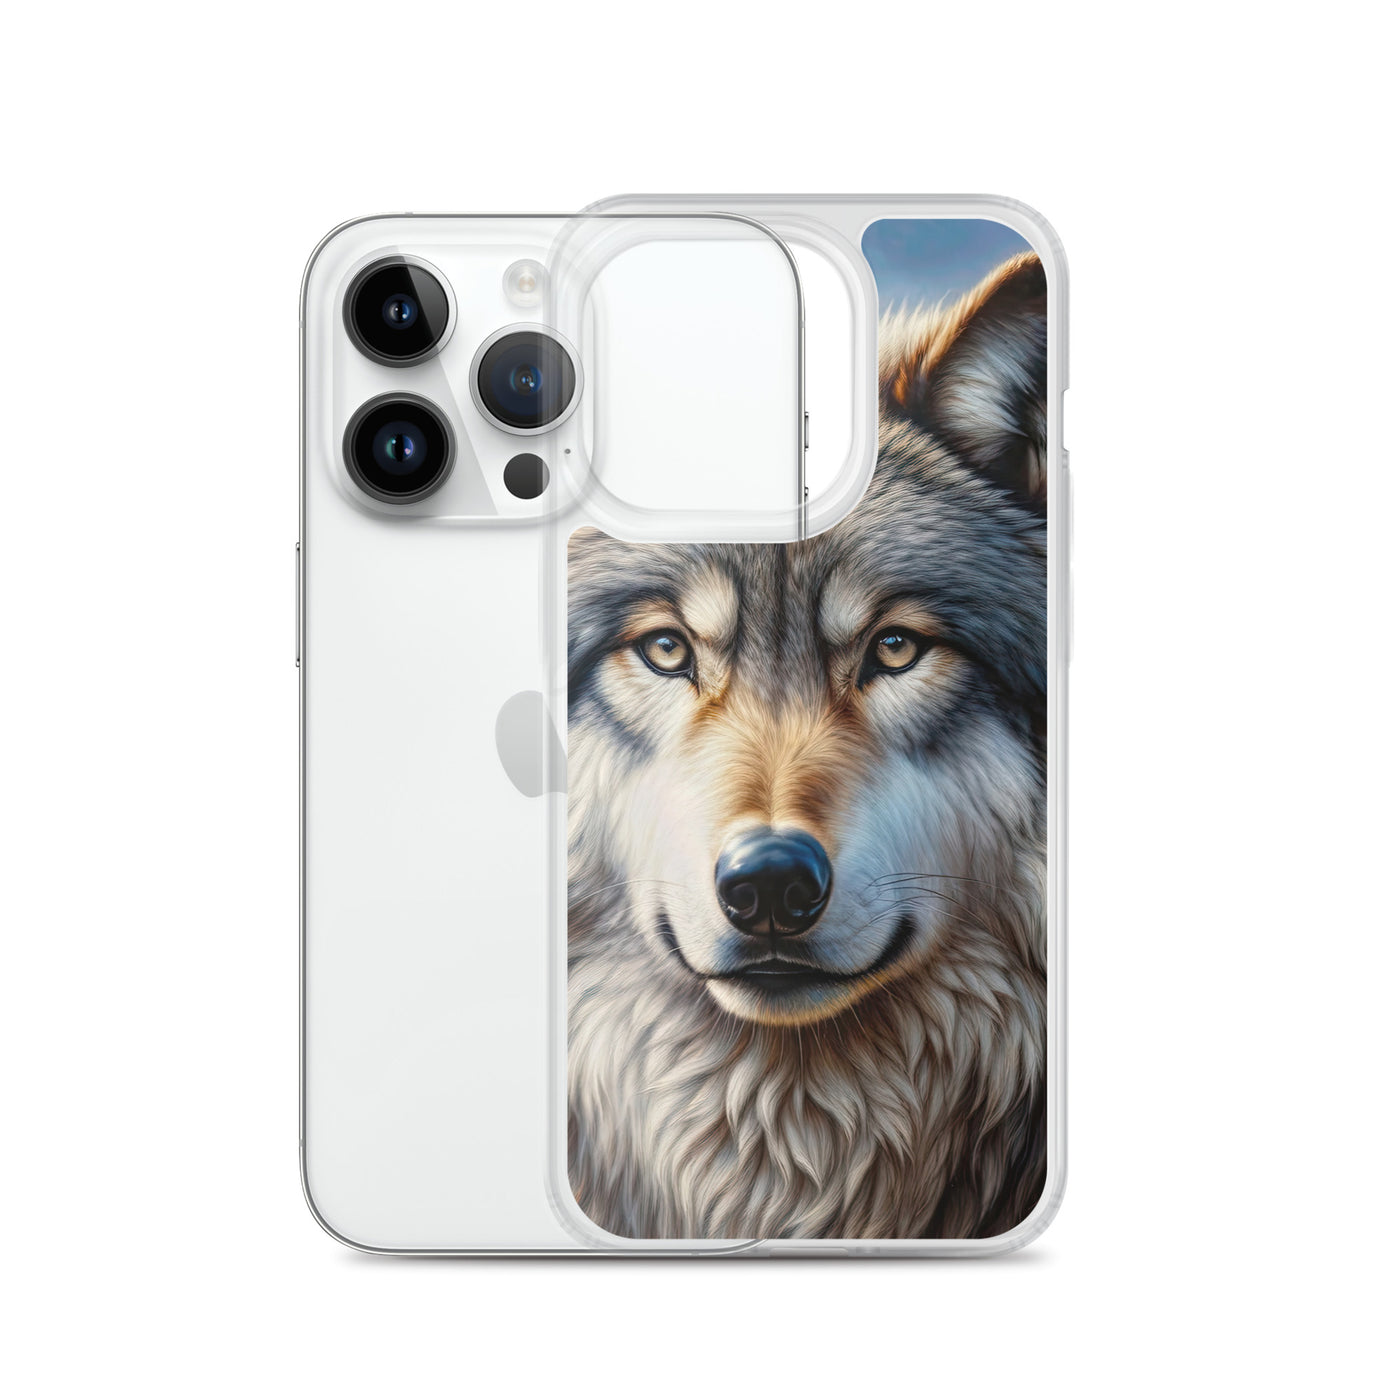 Porträt-Ölgemälde eines prächtigen Wolfes mit faszinierenden Augen (AN) - iPhone Schutzhülle (durchsichtig) xxx yyy zzz